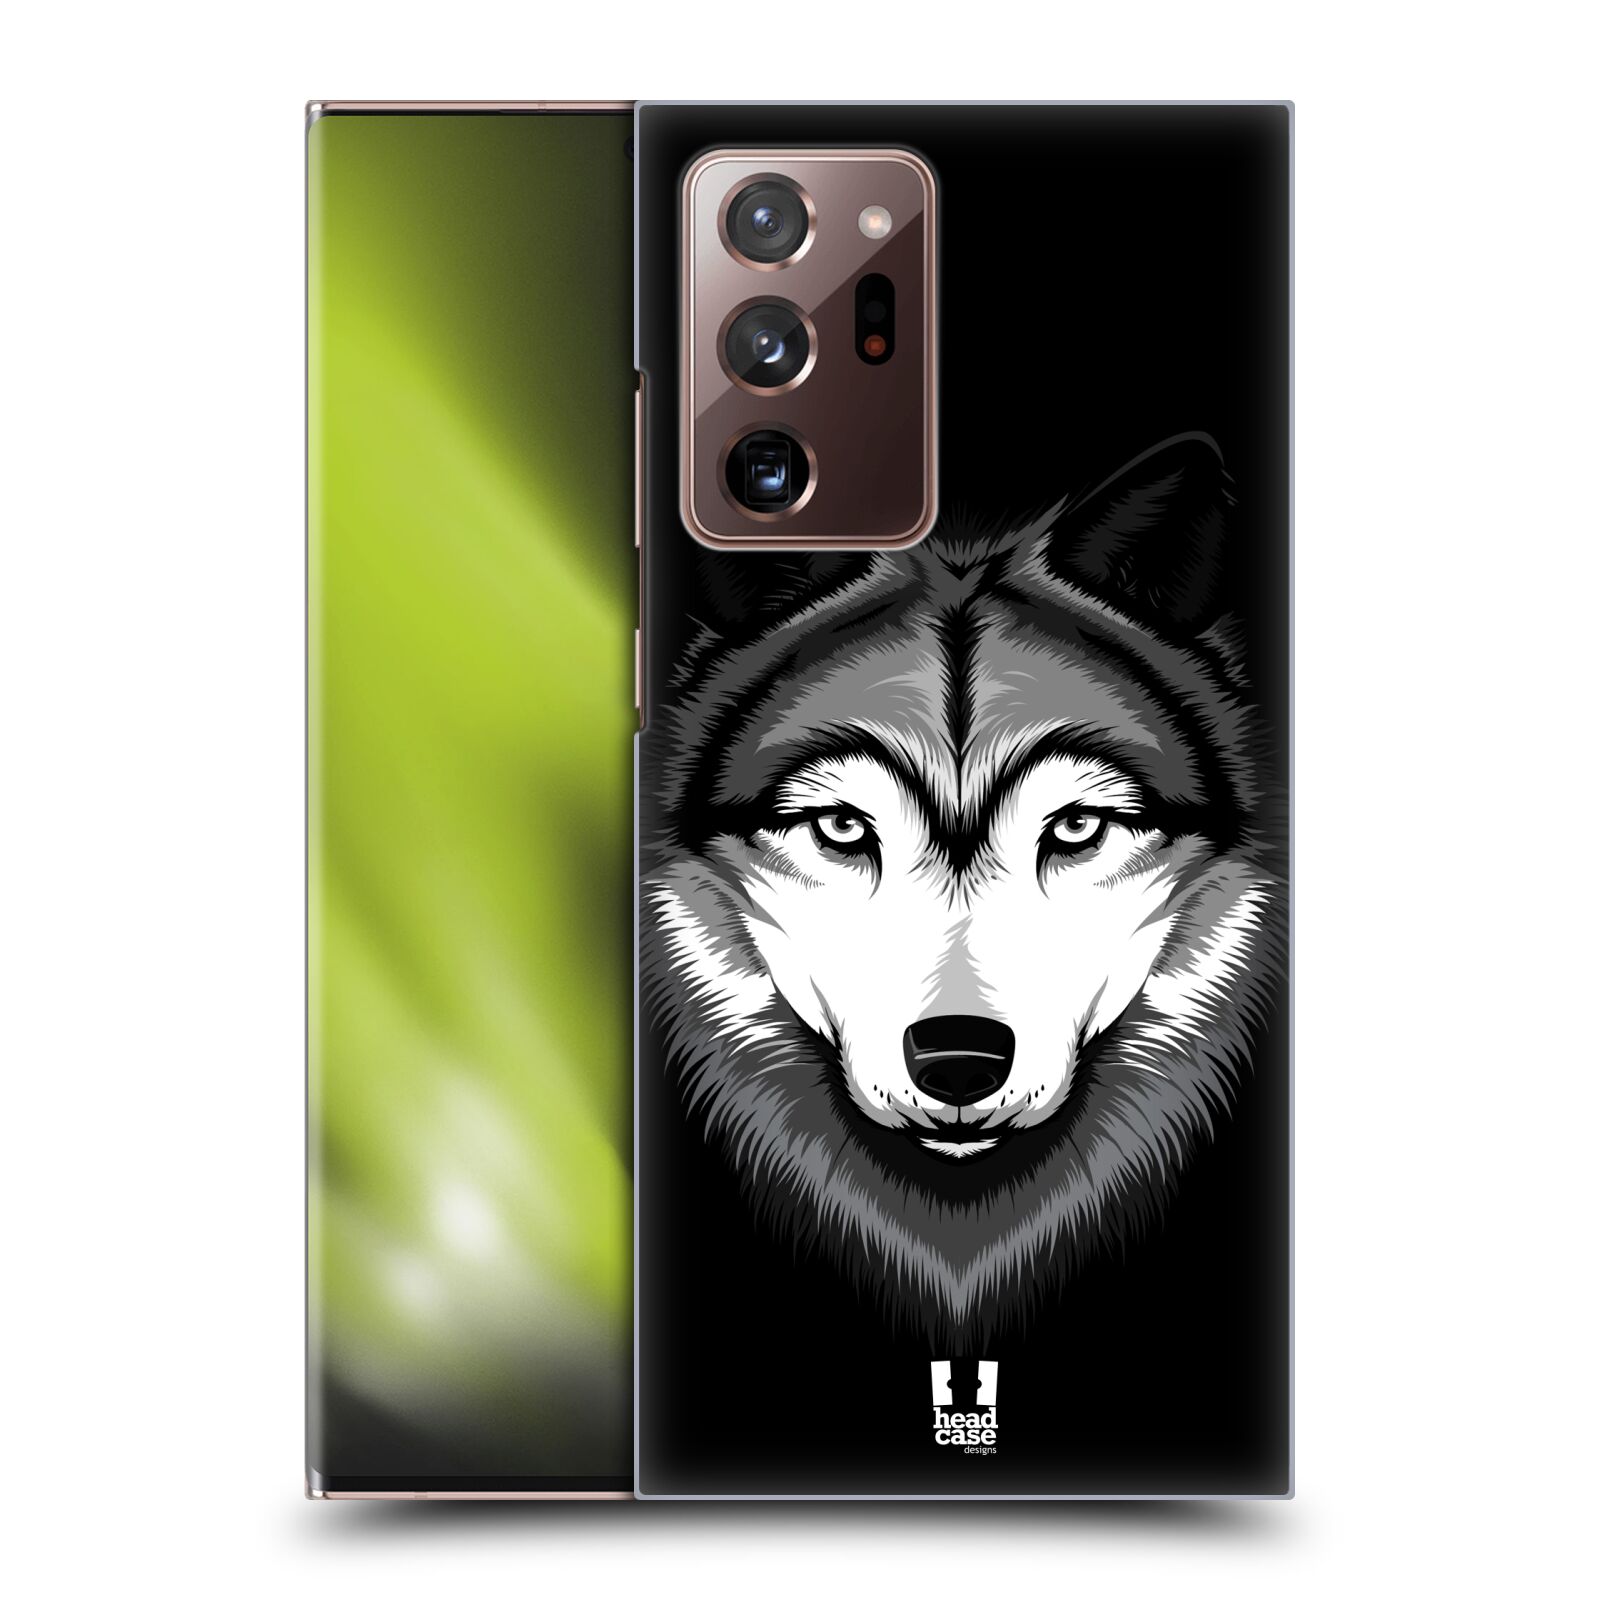 Plastový obal HEAD CASE na mobil Samsung Galaxy Note 20 ULTRA vzor Zvíře kreslená tvář 2 vlk